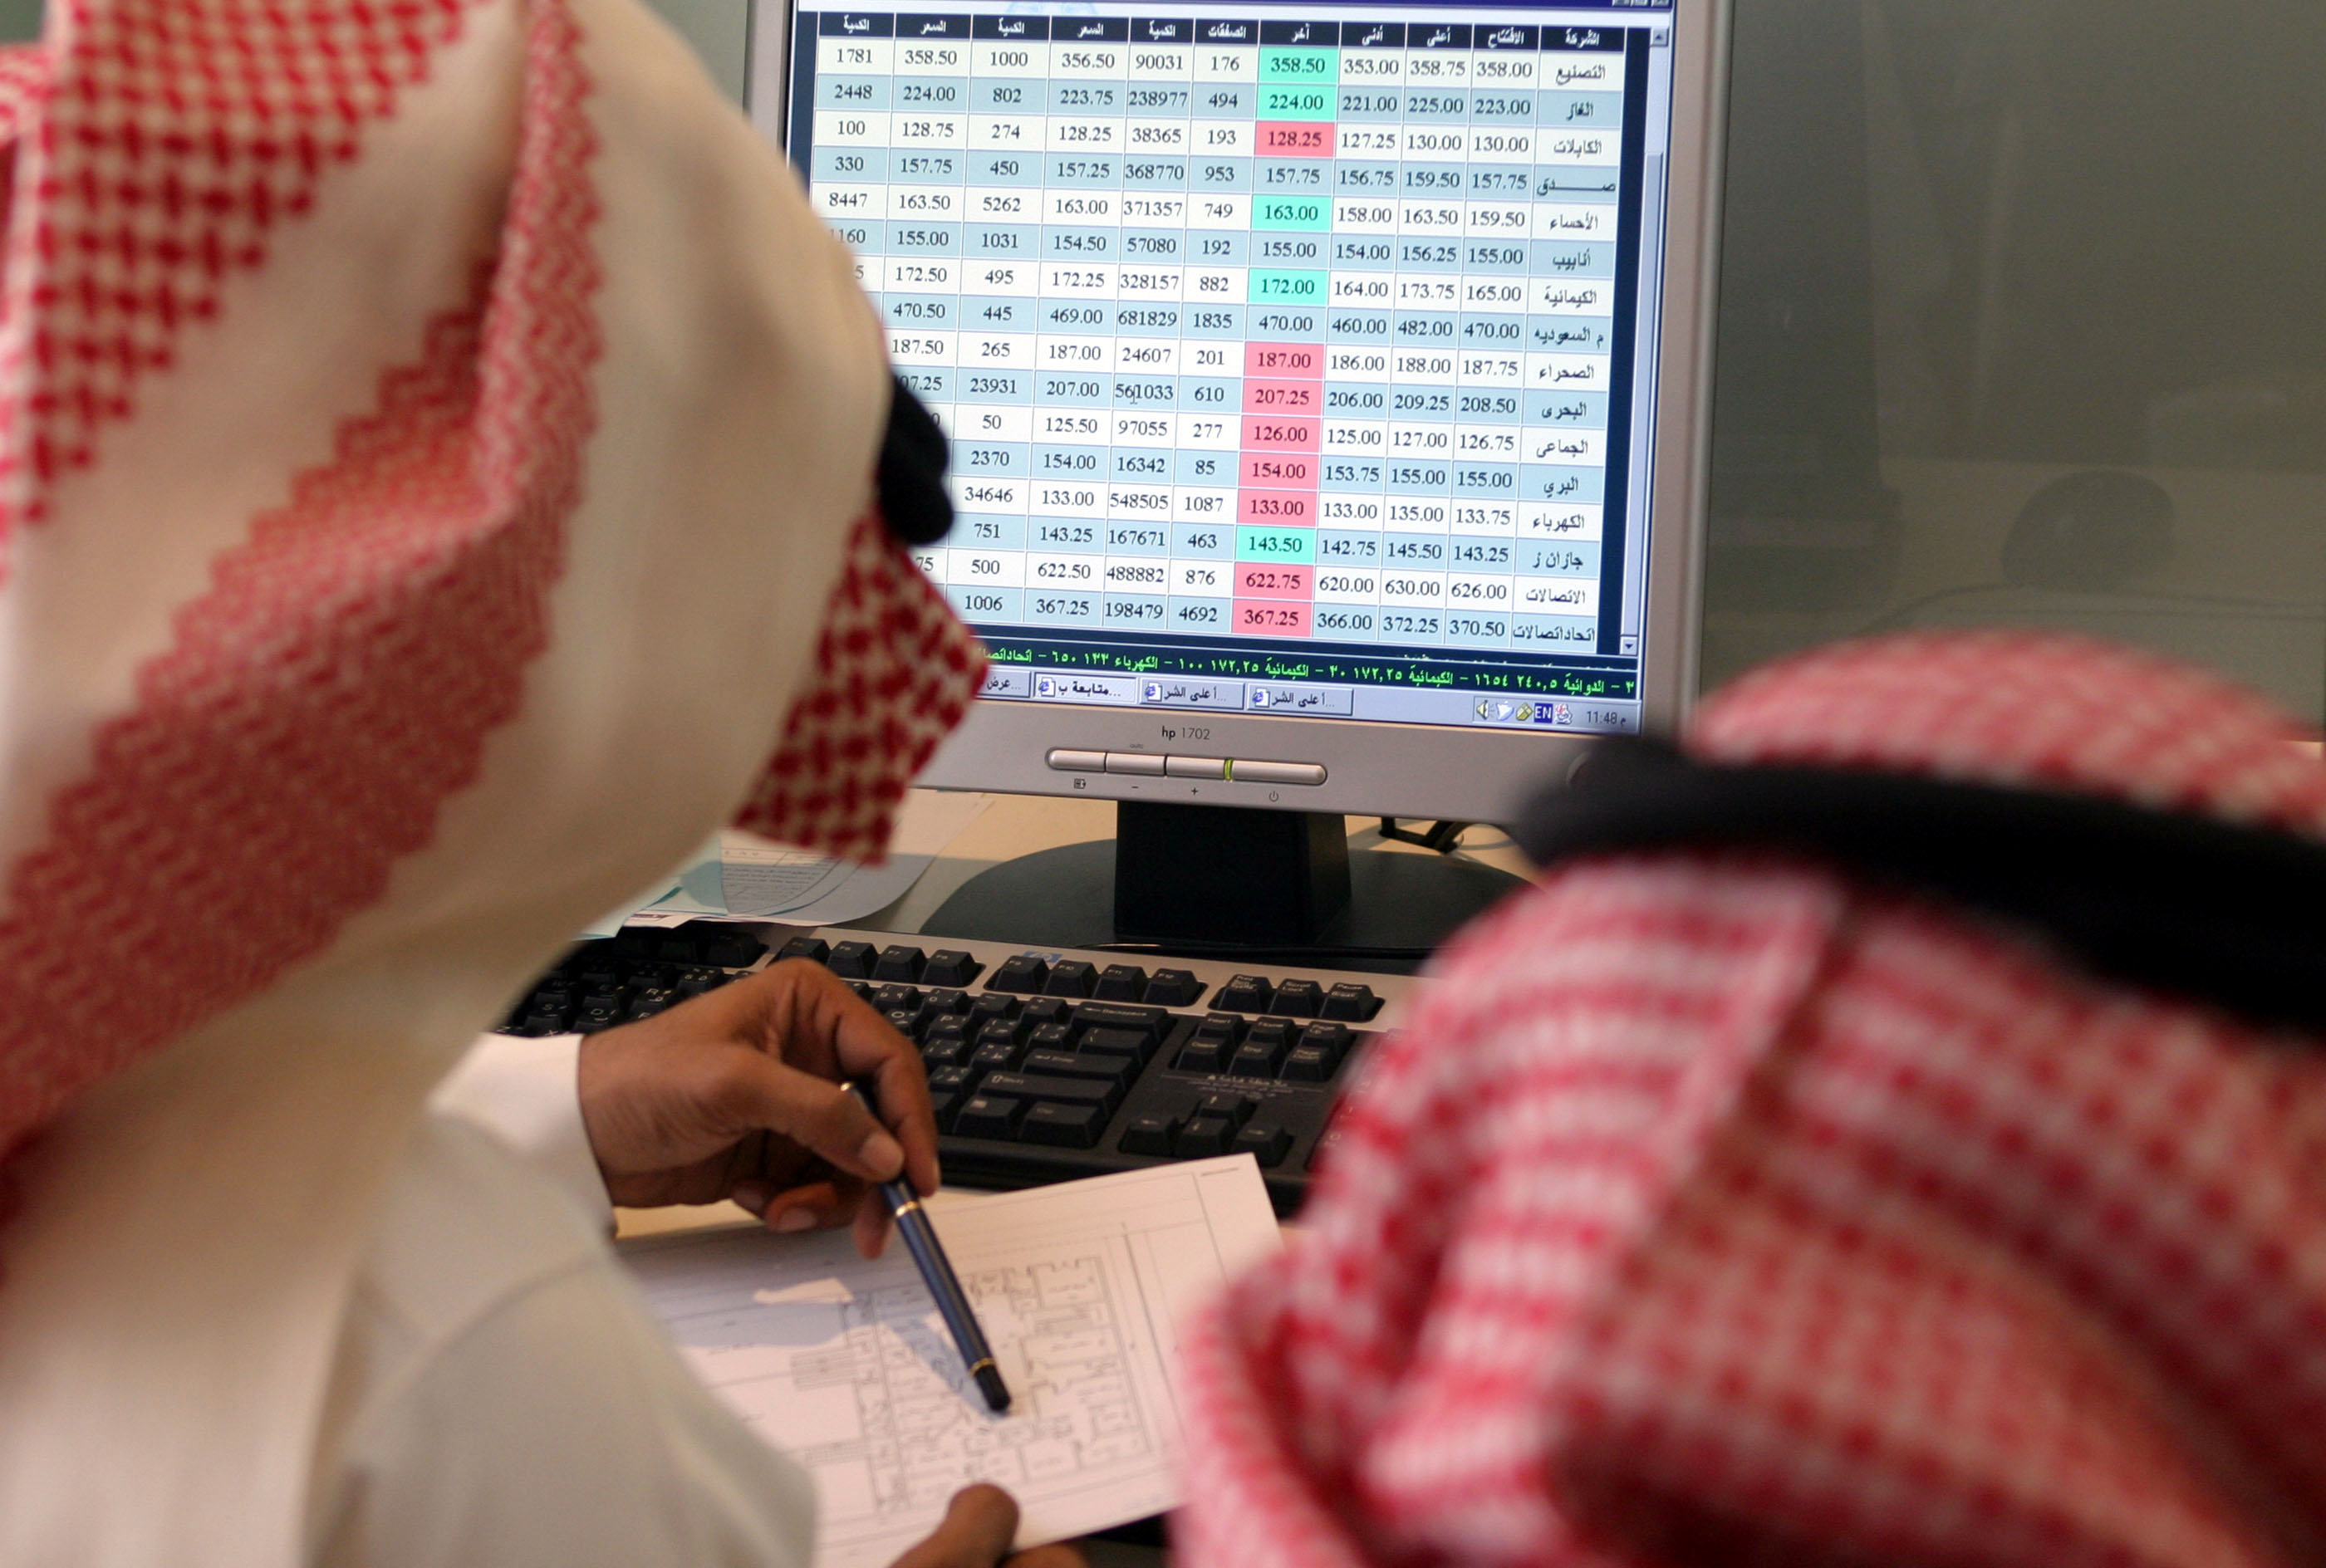  المؤشر السعودي يصعد يوم الأربعاء إلى 7,306.85 نقطة